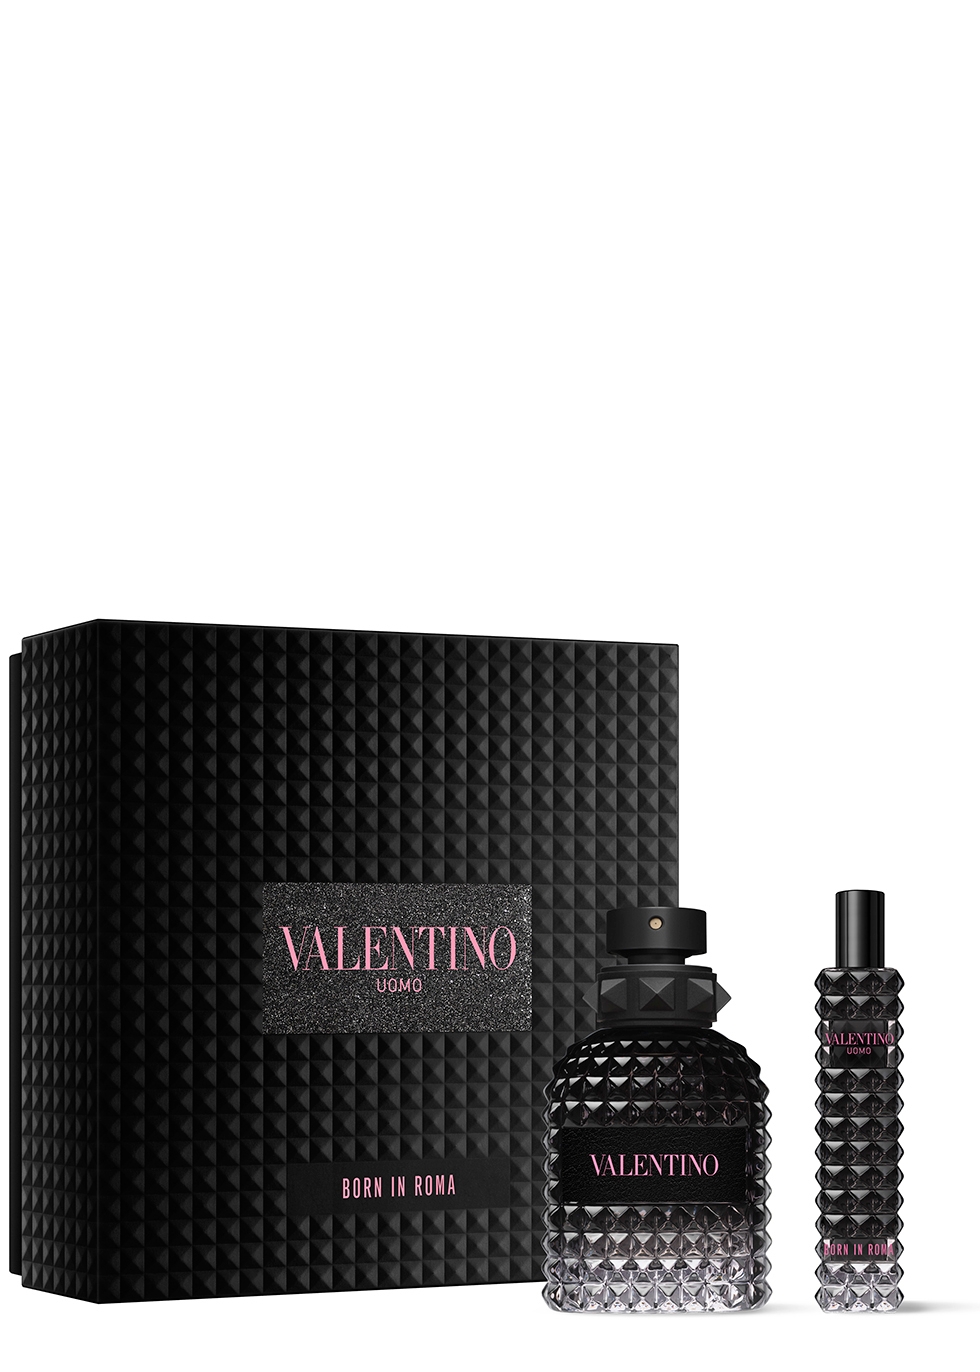 Valentino Born in Roma Uomo Eau de Toilette Gift Set 50ml - Harvey Nichols